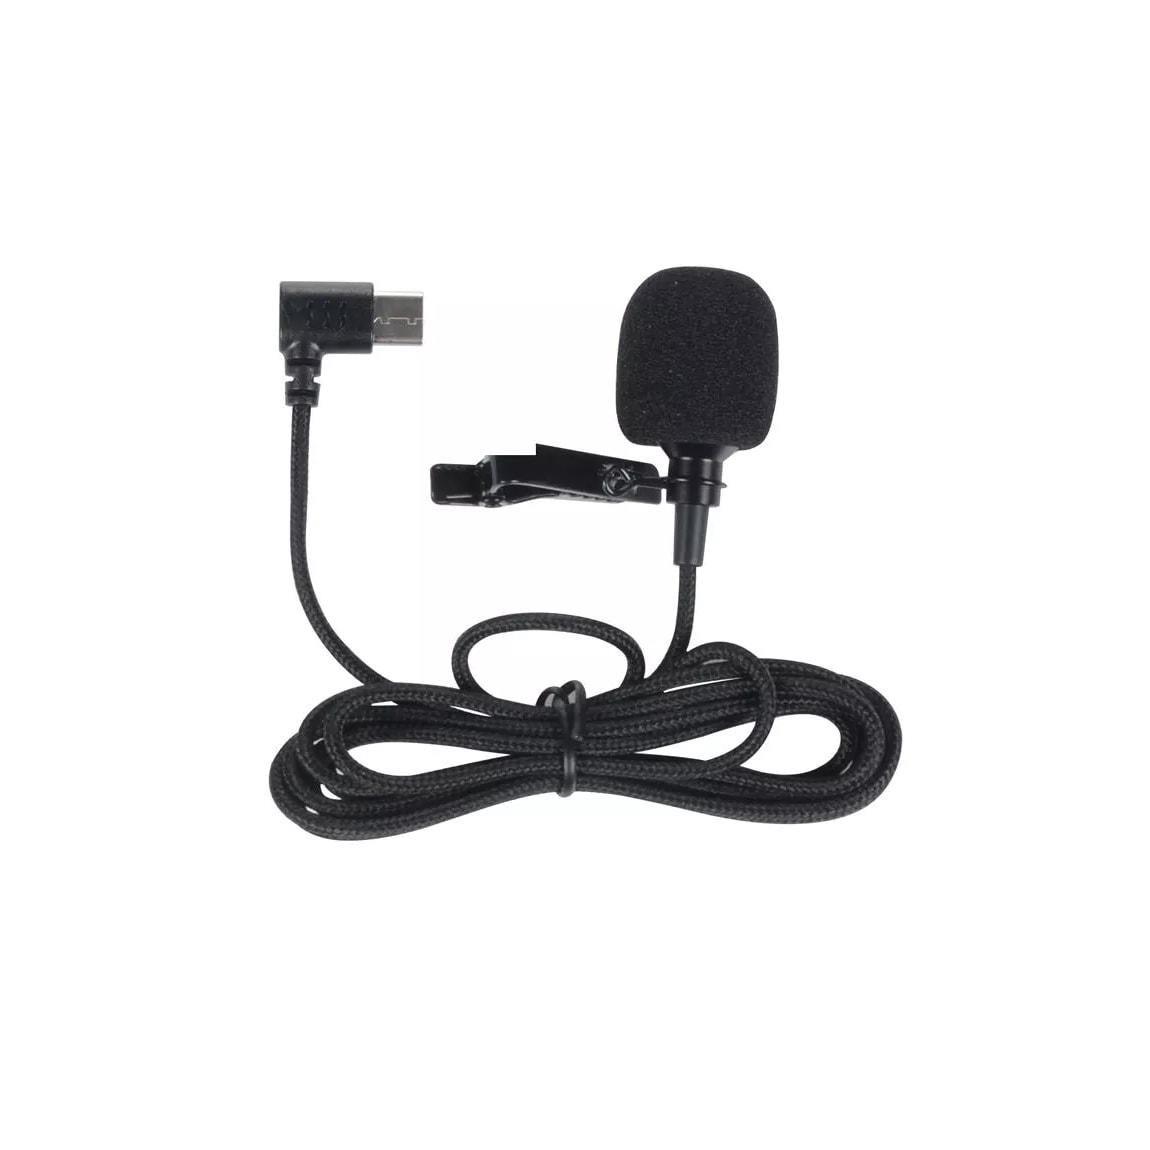 SJCAM External Microphone for SJ8 / SJ9 / SJ10 / SJ11 / C200 / C300